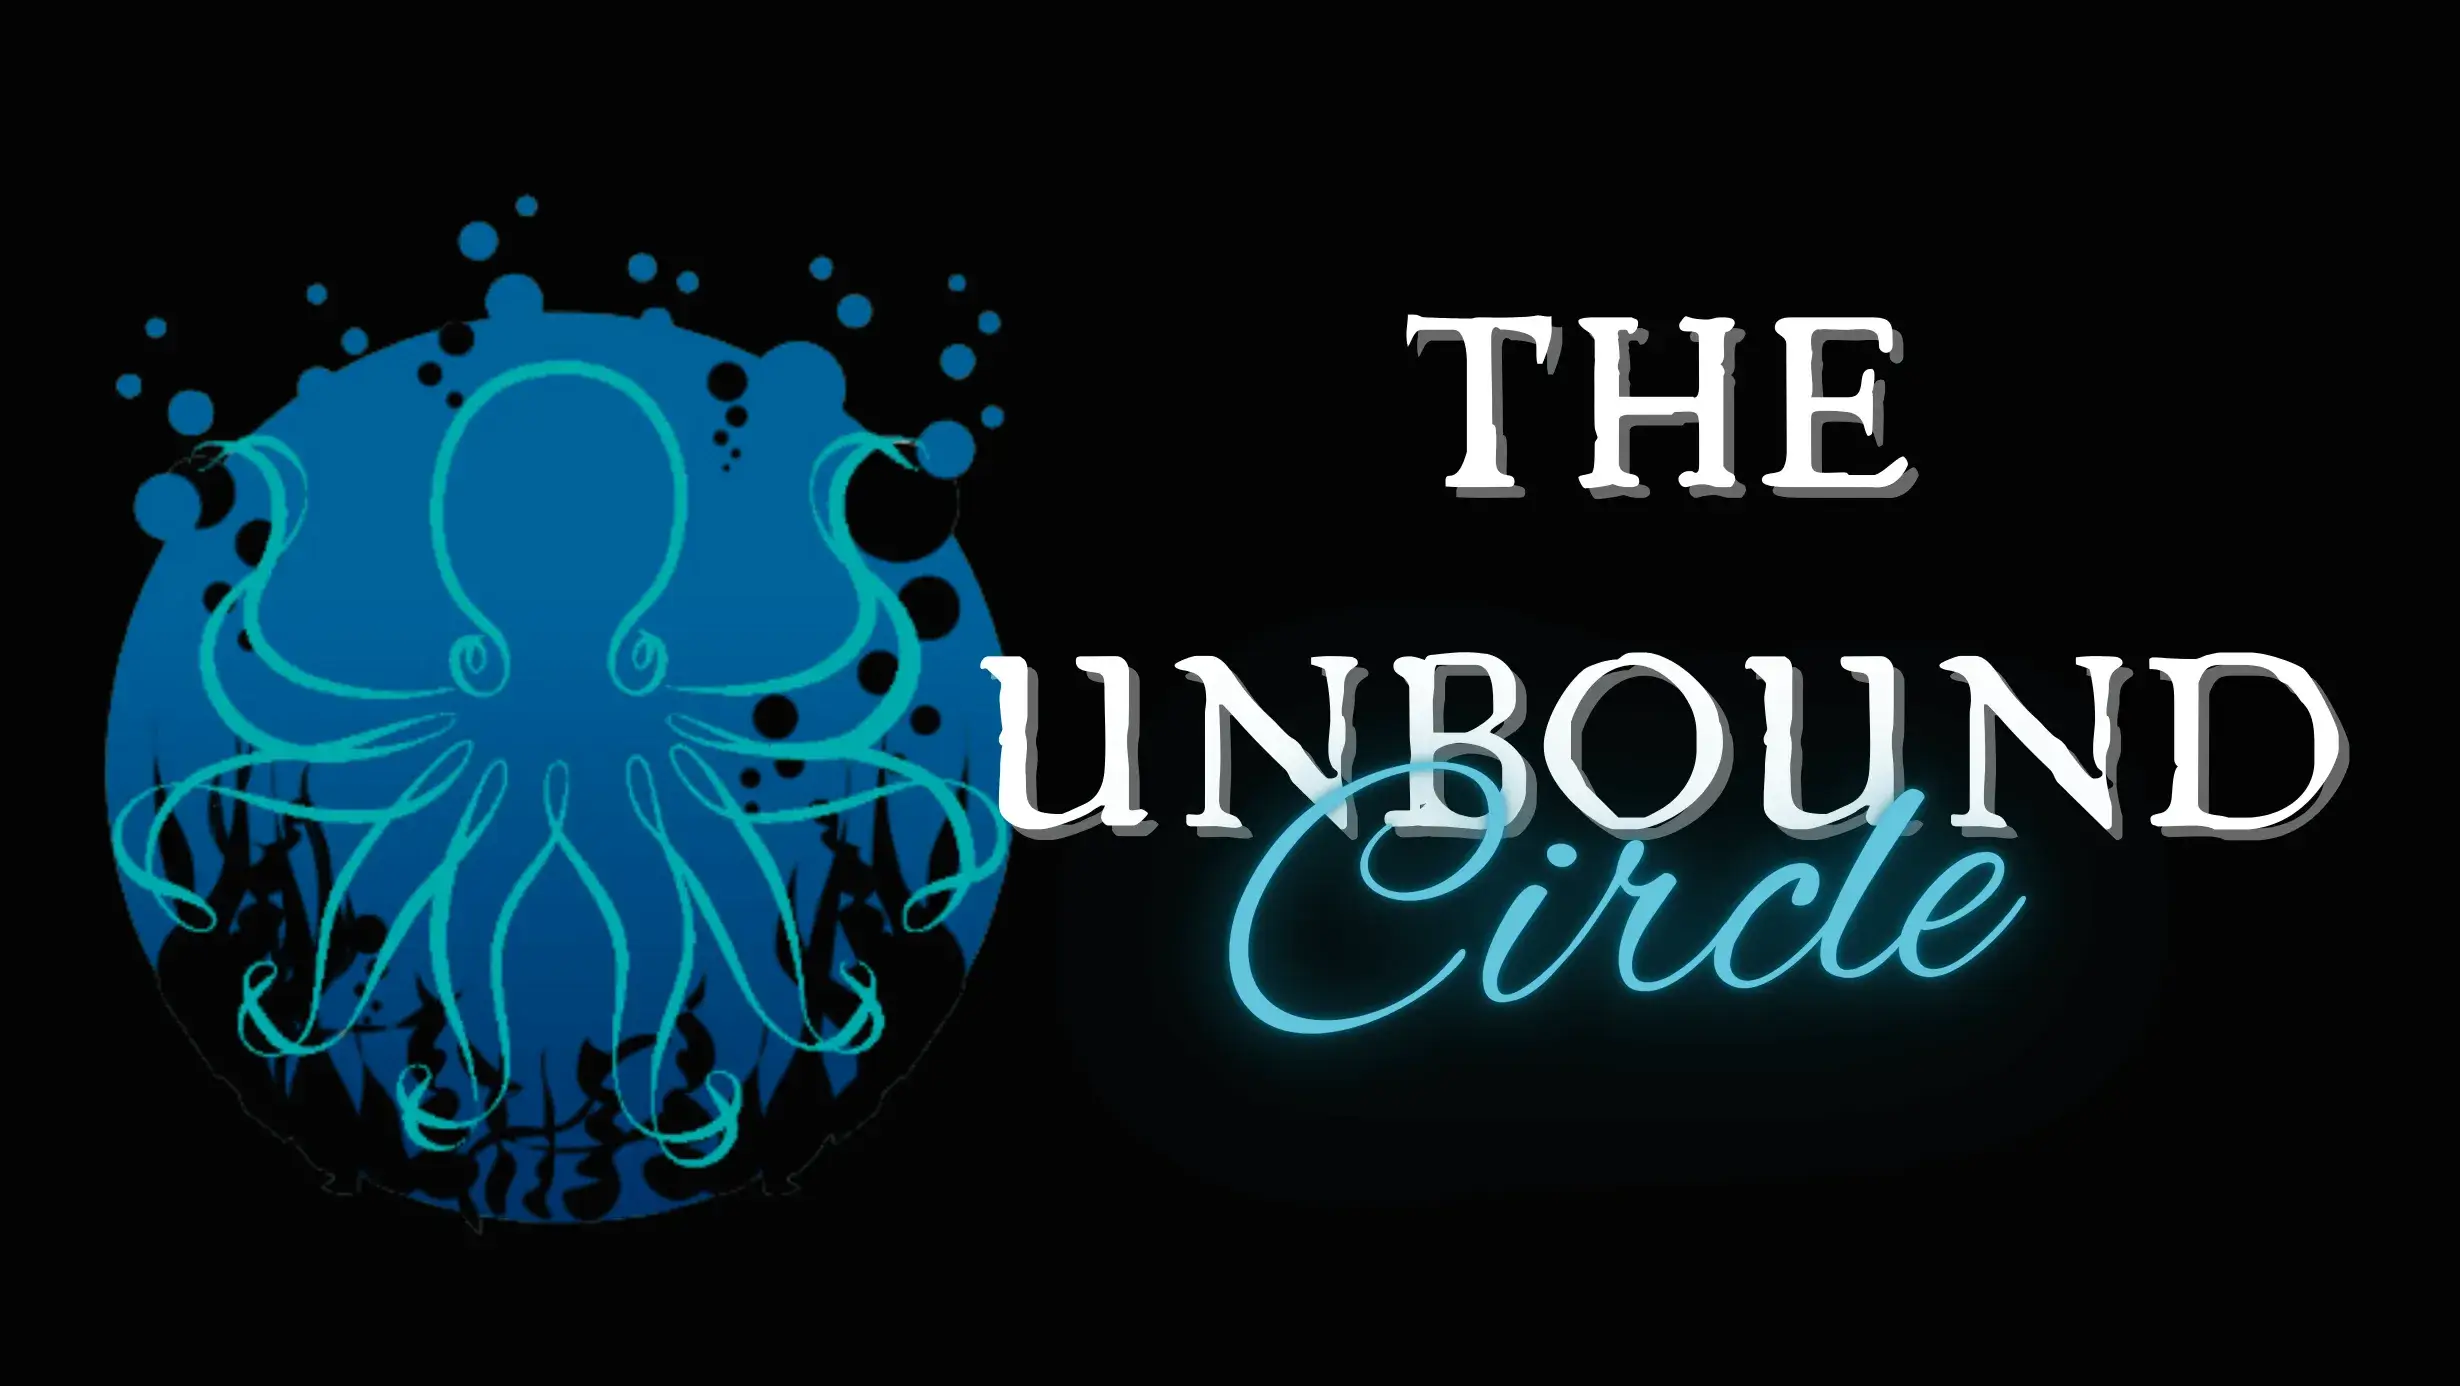 Unbound Circle v2